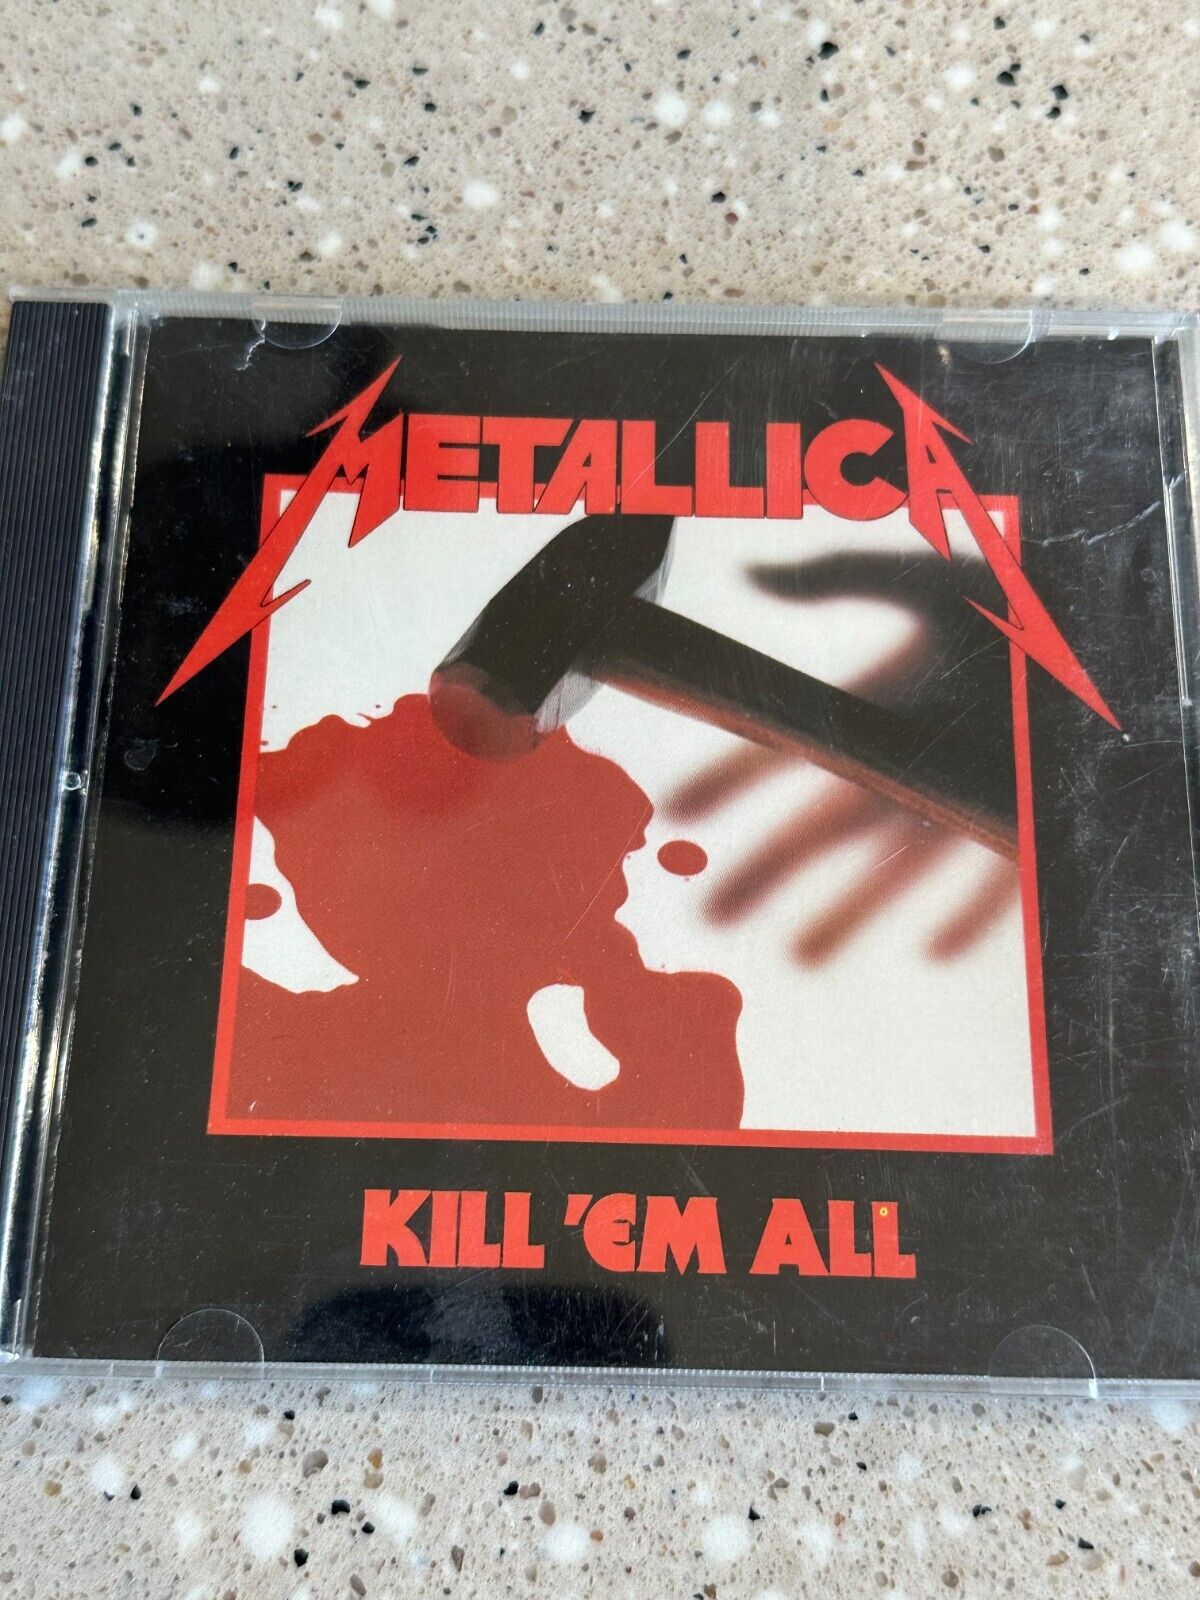 [NM] Metallica Kill Em All Rare ORIG CD 12 Tracks Am I Evil Blitzkrieg OOP HTF